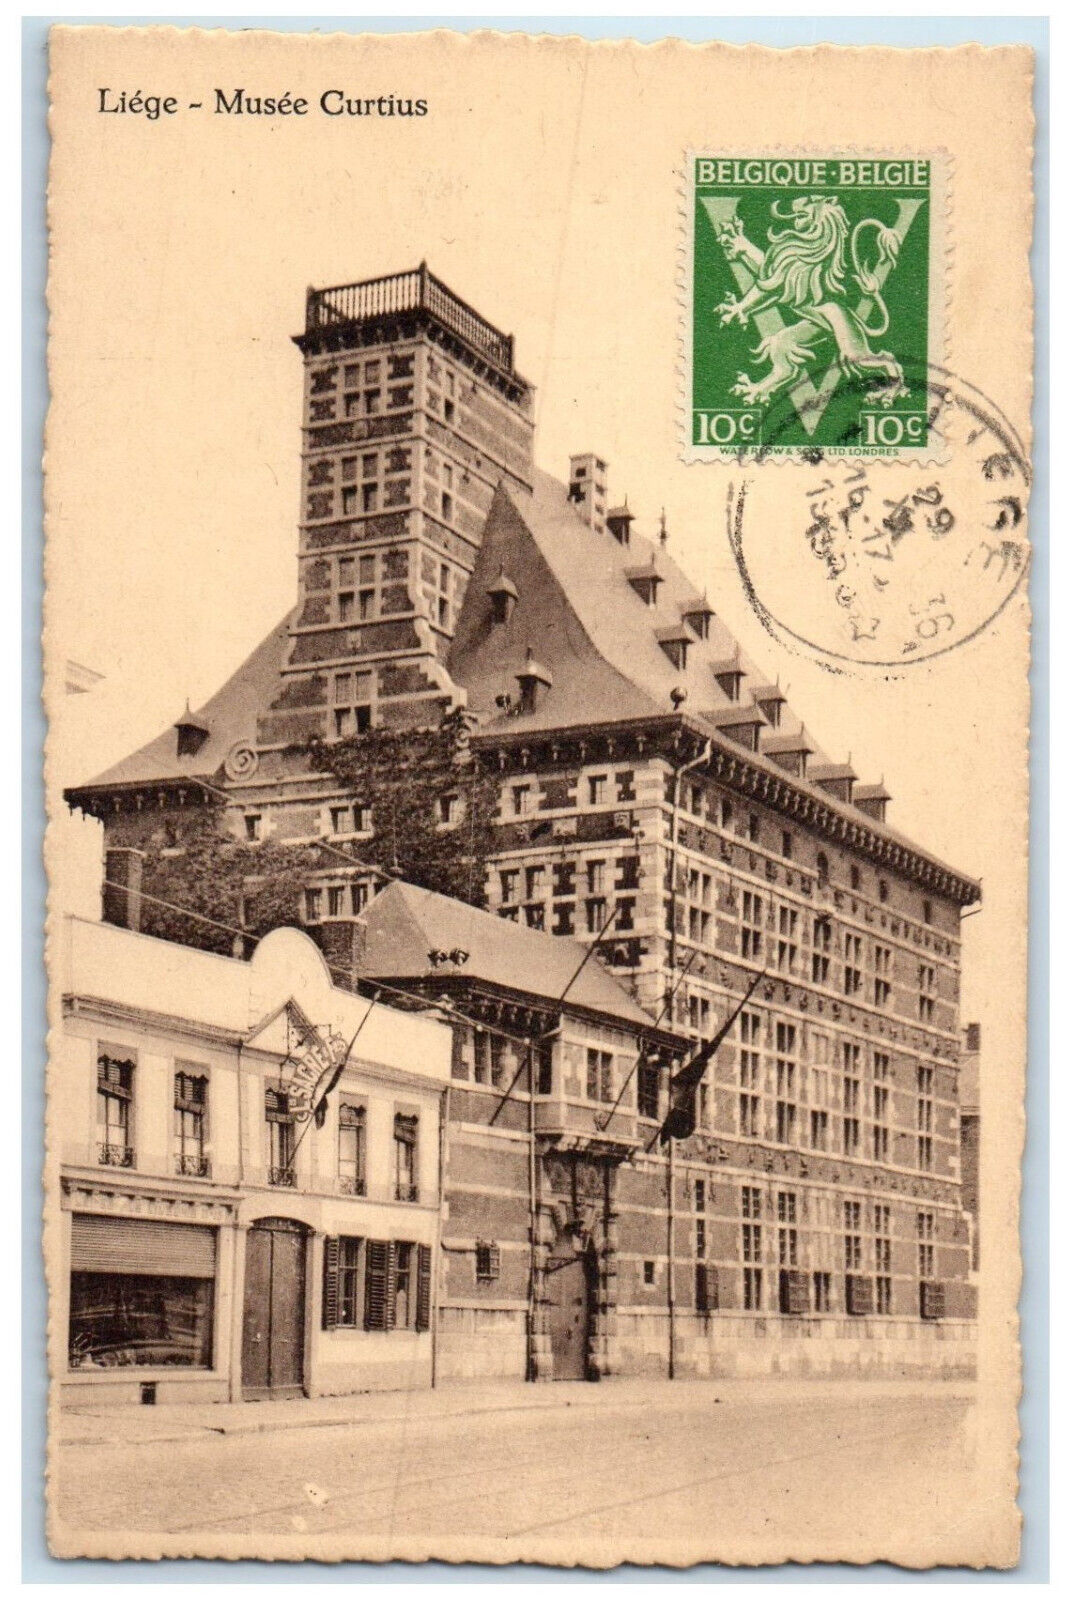 c1910 Le Grand Curtius Museum Liege Belgium Antique Posted Postcard